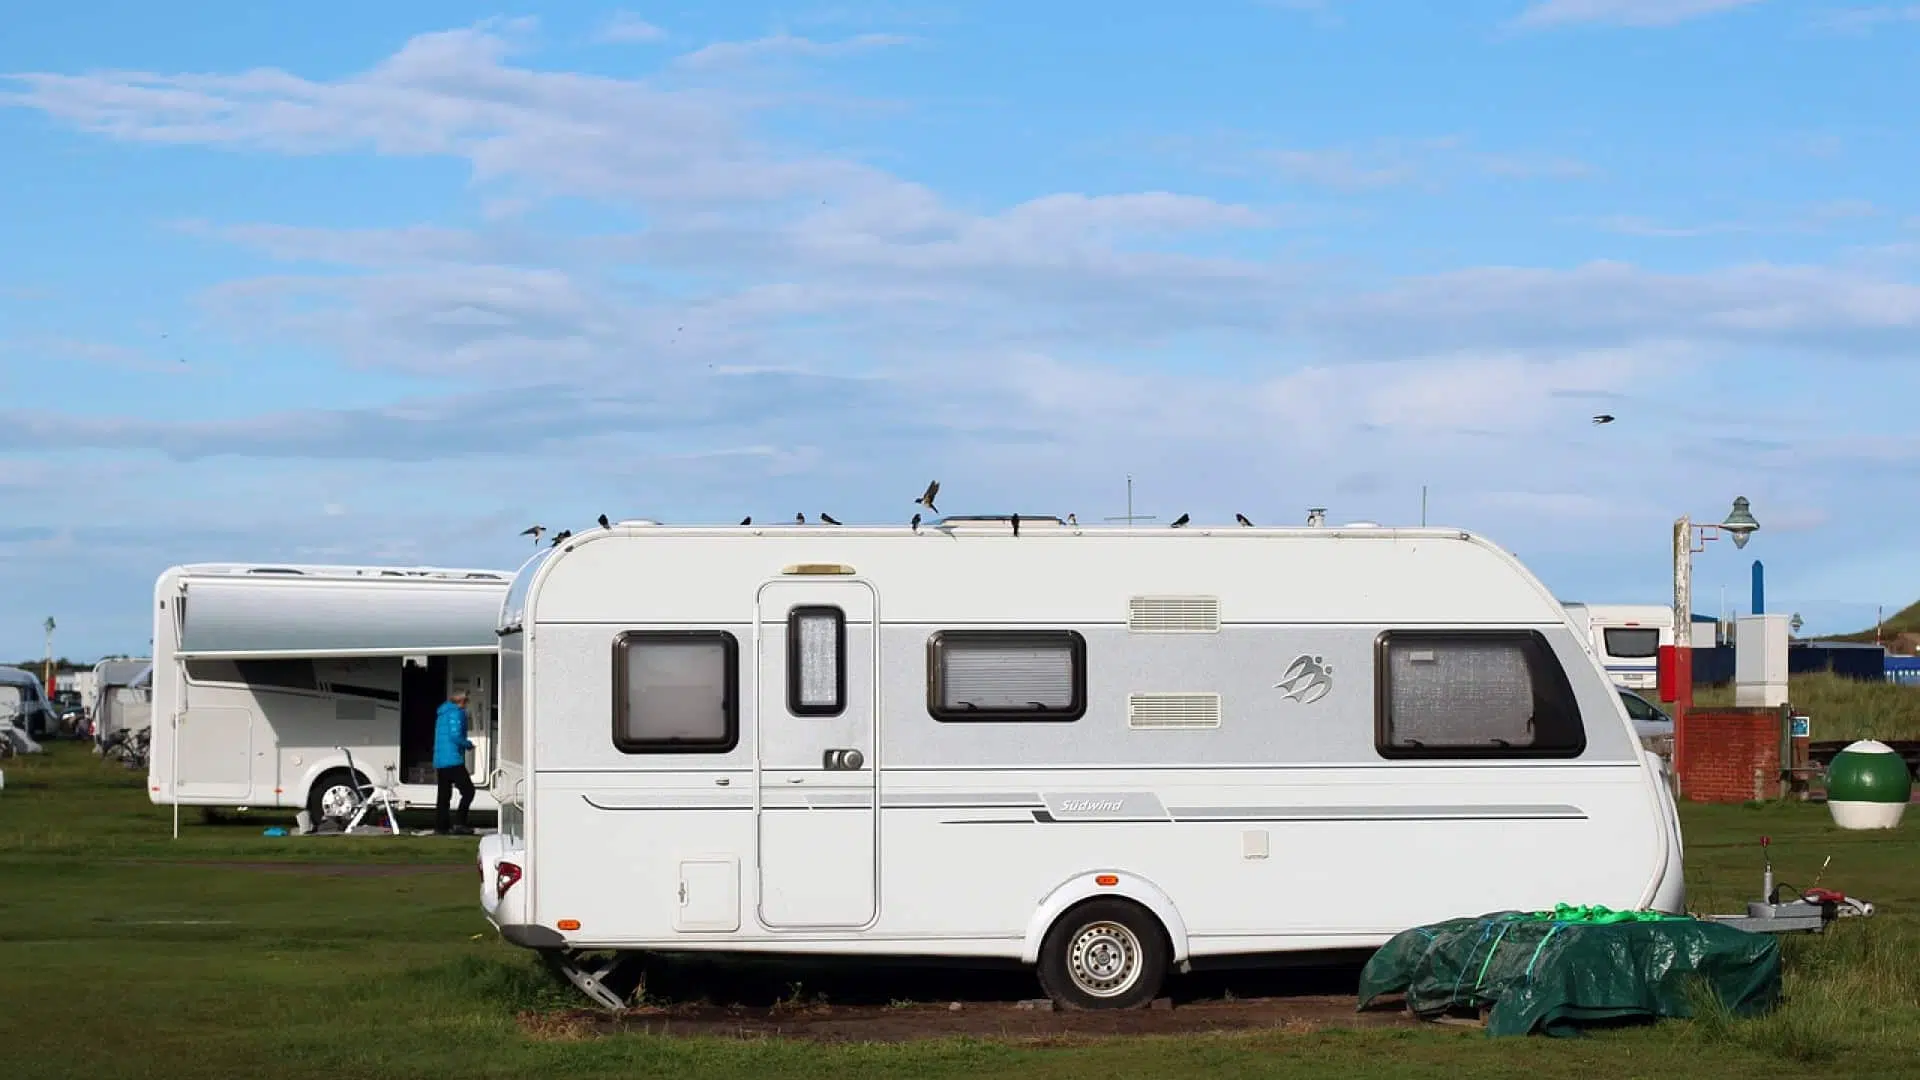 Caravane ou camping-car, que choisir ?